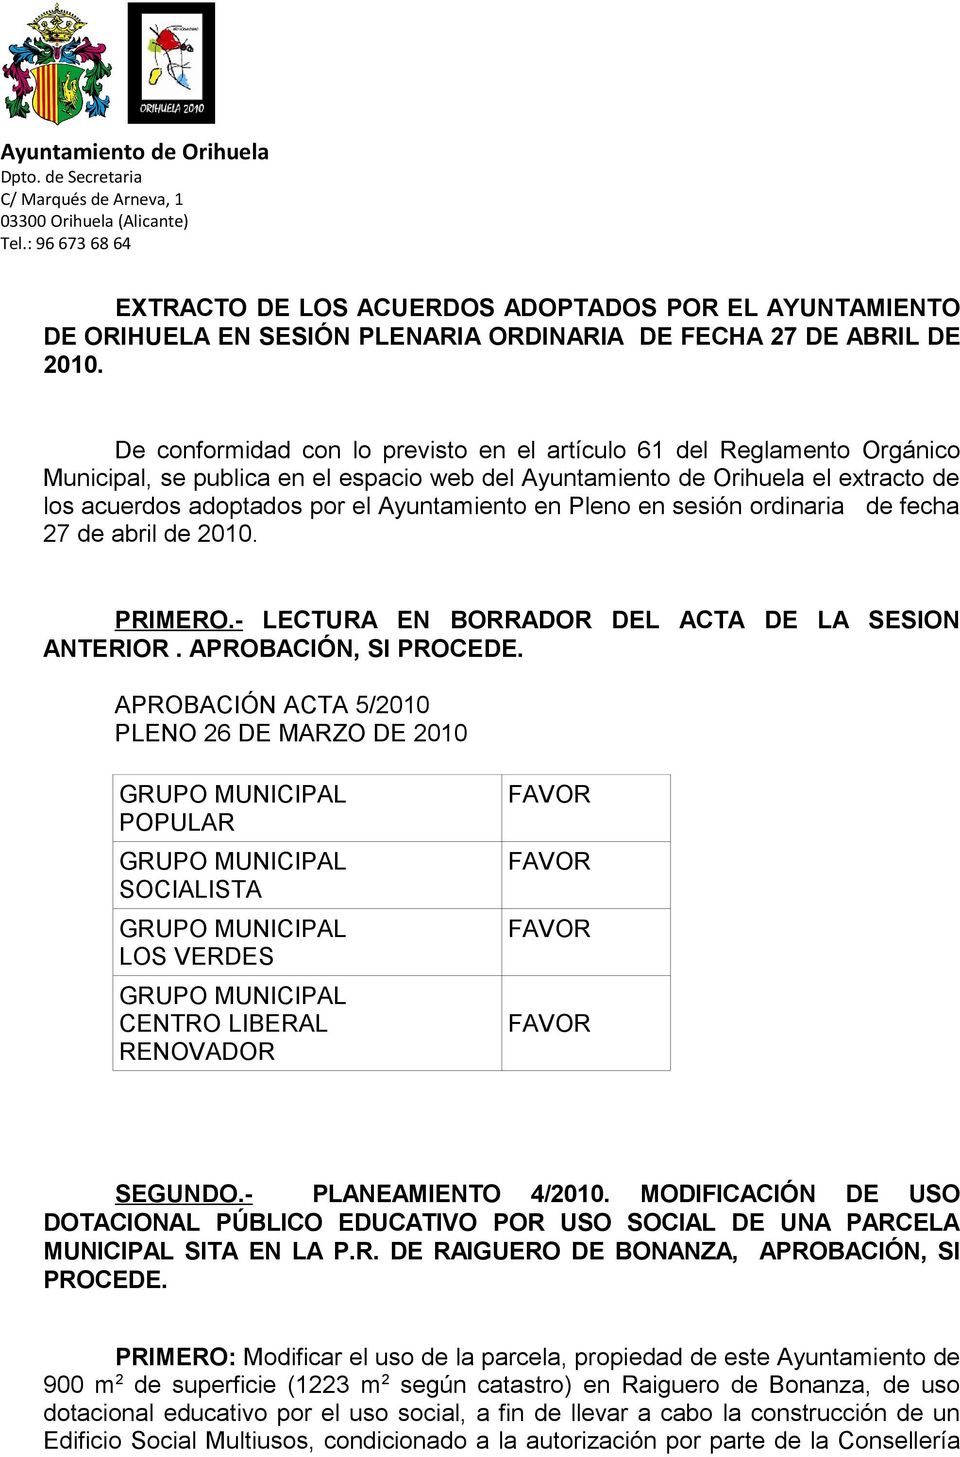 De conformidad con lo previsto en el artículo 61 del Reglamento Orgánico Municipal, se publica en el espacio web del Ayuntamiento de Orihuela el extracto de los acuerdos adoptados por el Ayuntamiento